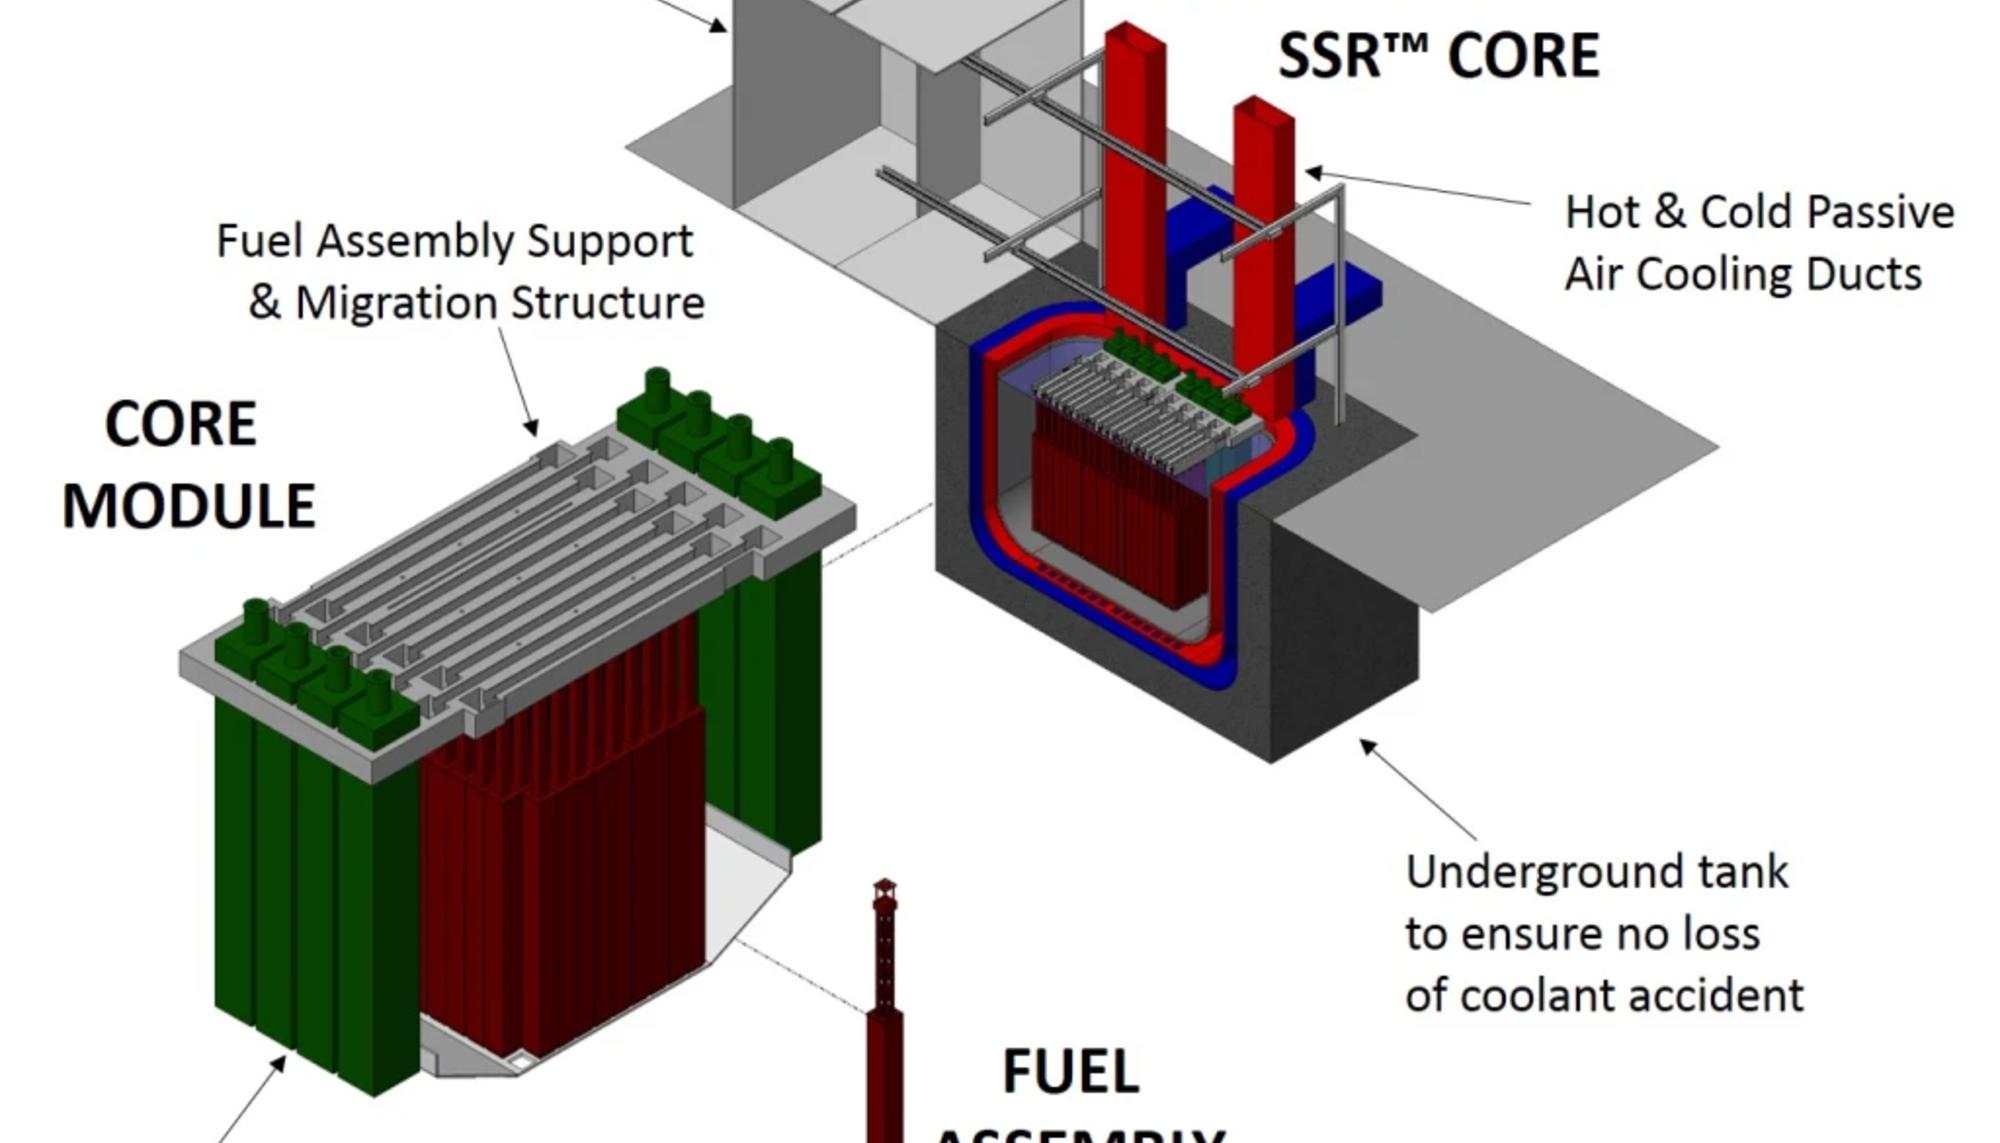 Reactor de 300 MW gráfico de Moltex, uno de los beneficiarios de la financiación gubernamental en Canadá. Fuente: M. V. Ramana